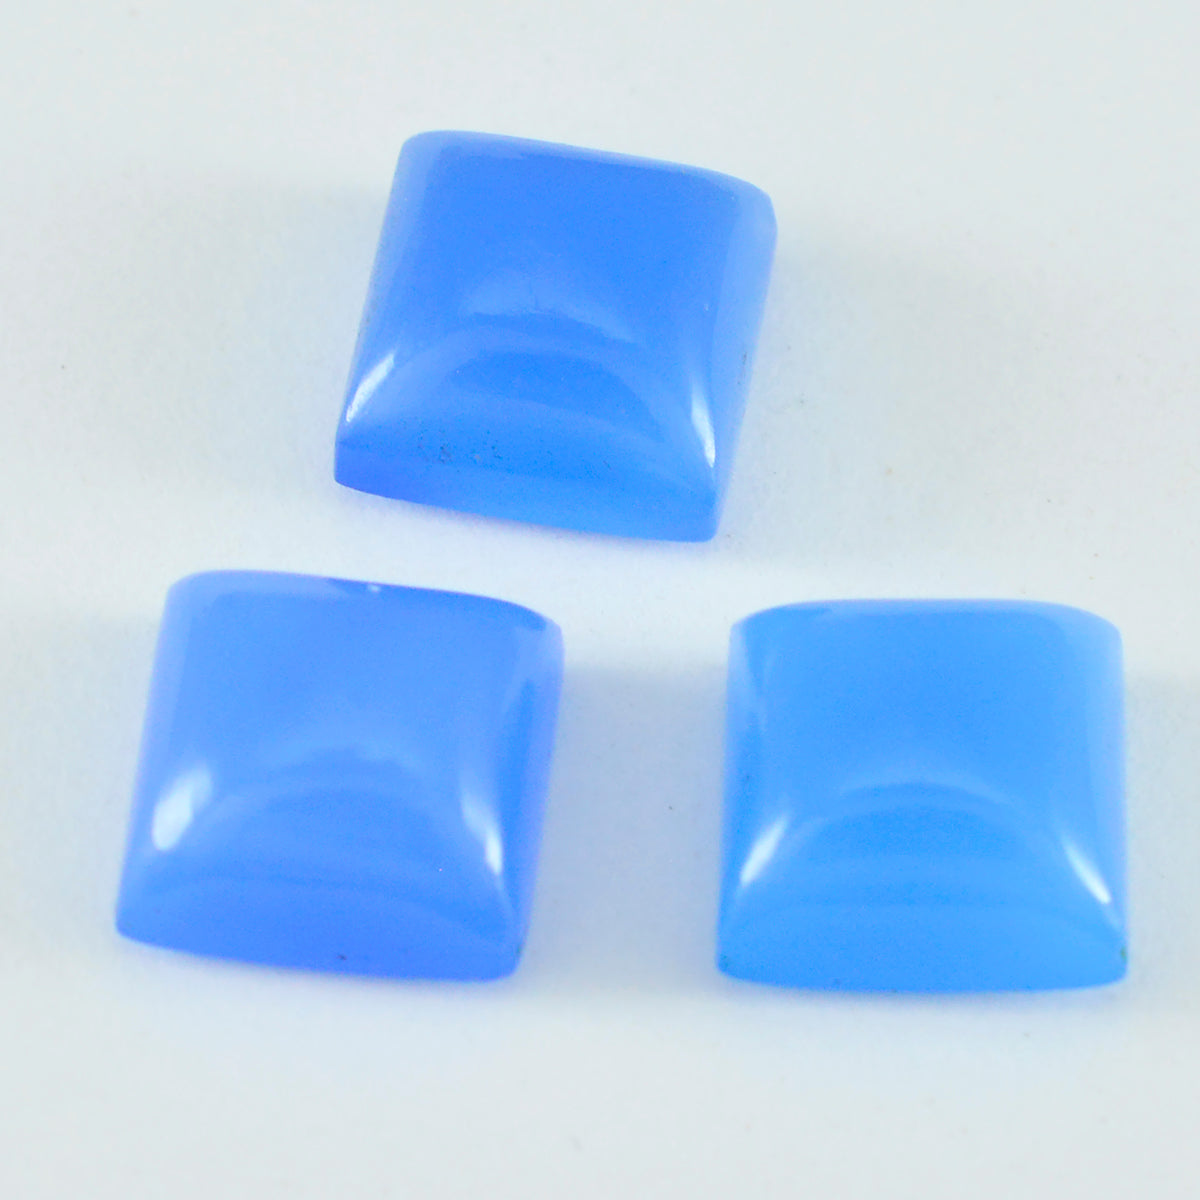 Riyogems 1PC blauwe chalcedoon cabochon 12x12 mm vierkante vorm geweldige kwaliteit losse steen